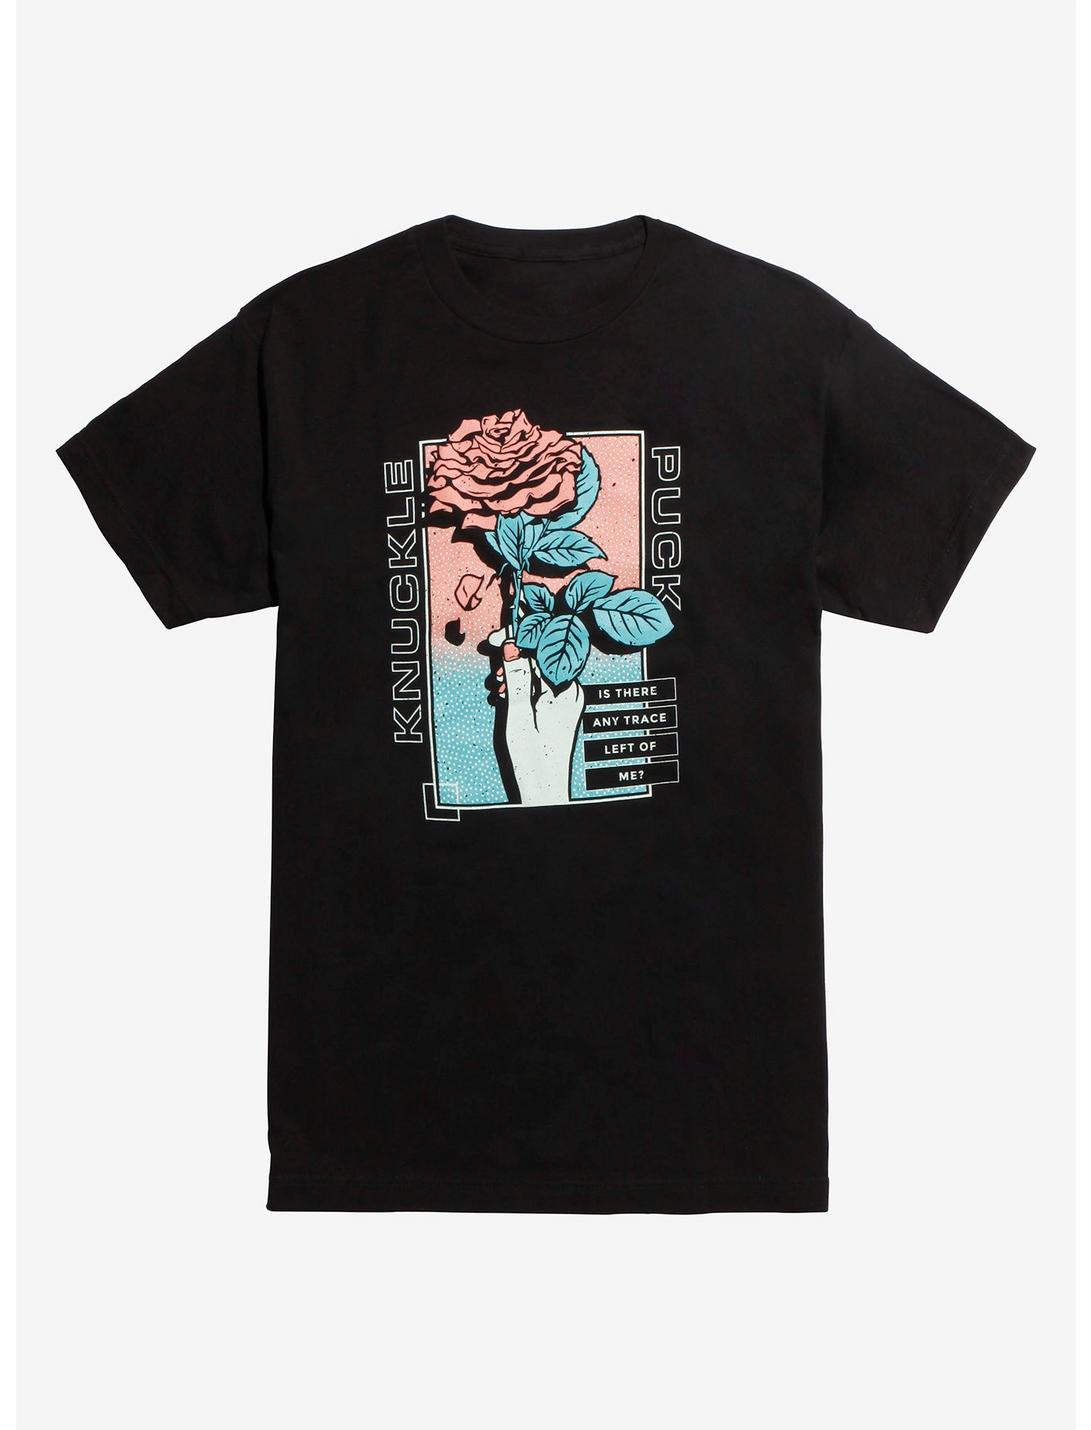 Knuckle Puck Holding Rose T-Shirt, BLACK, hi-res